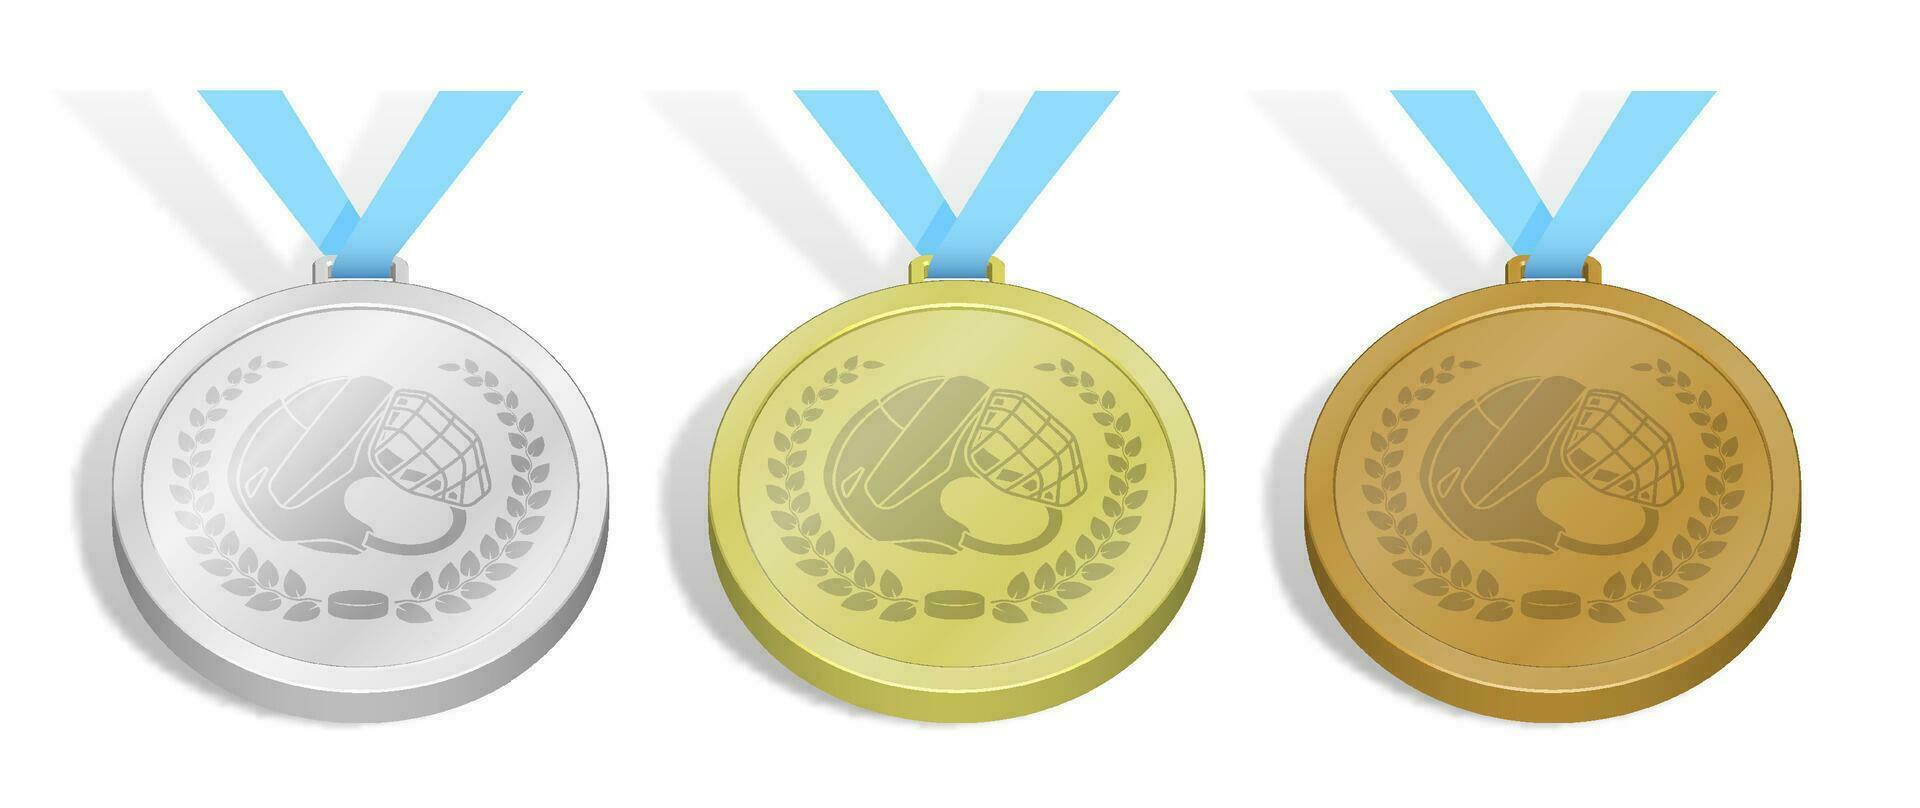 conjunto de deporte hielo hockey medallas emblema de abierto hockey casco y negro caucho disco en laurel guirnalda para hielo hockey competencia. oro, plata y bronce premio con azul cinta. 3d vector